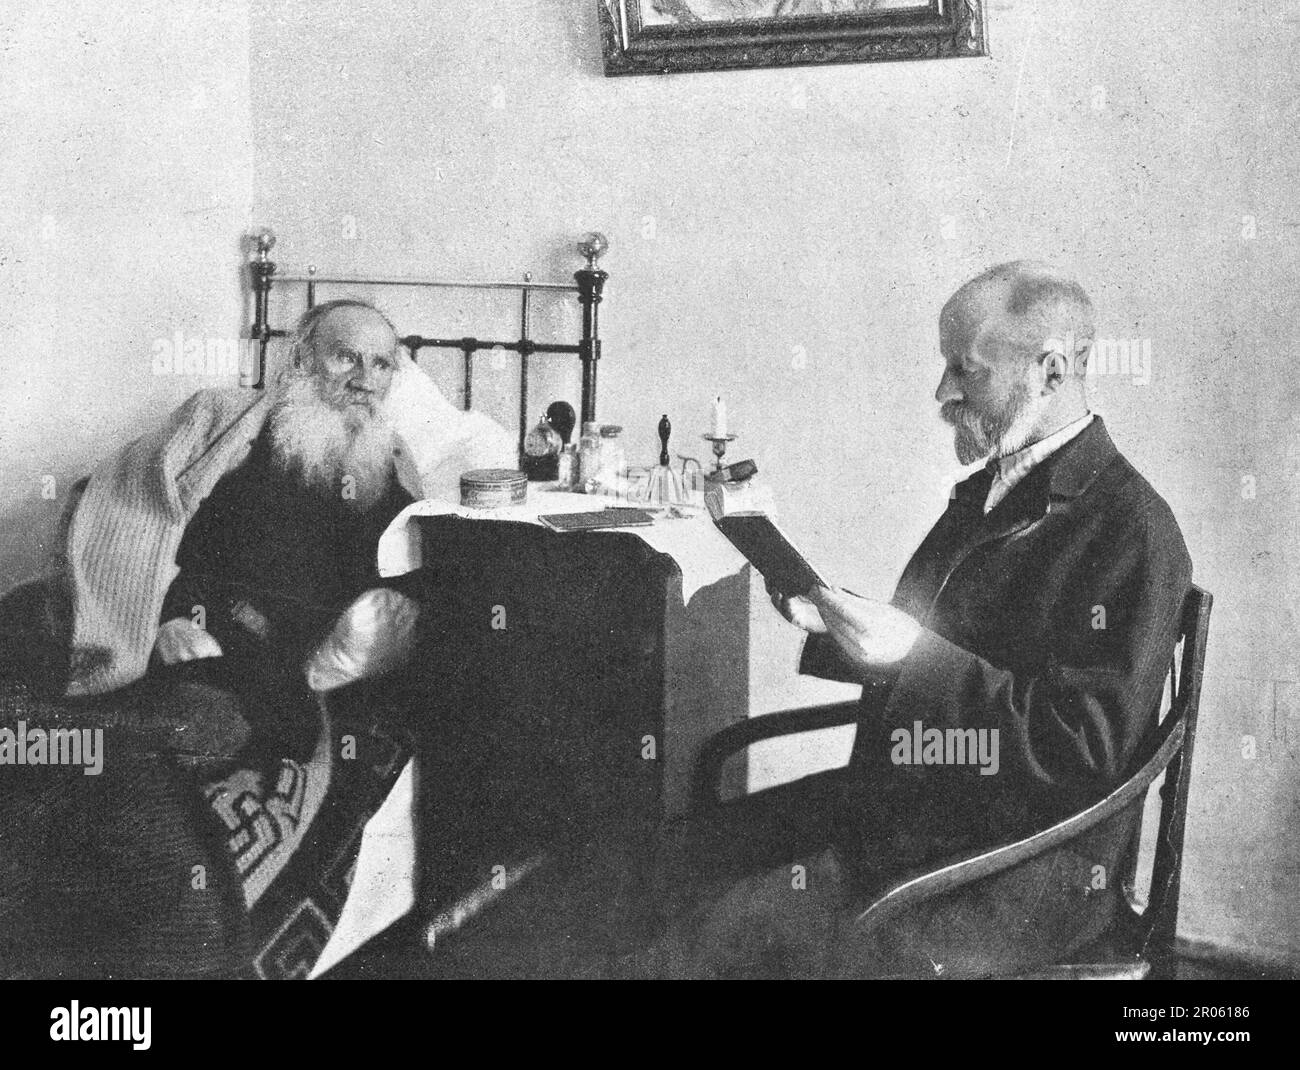 Dr. D. Makovitsky reads a book to Leo Tolstoy. Stock Photo